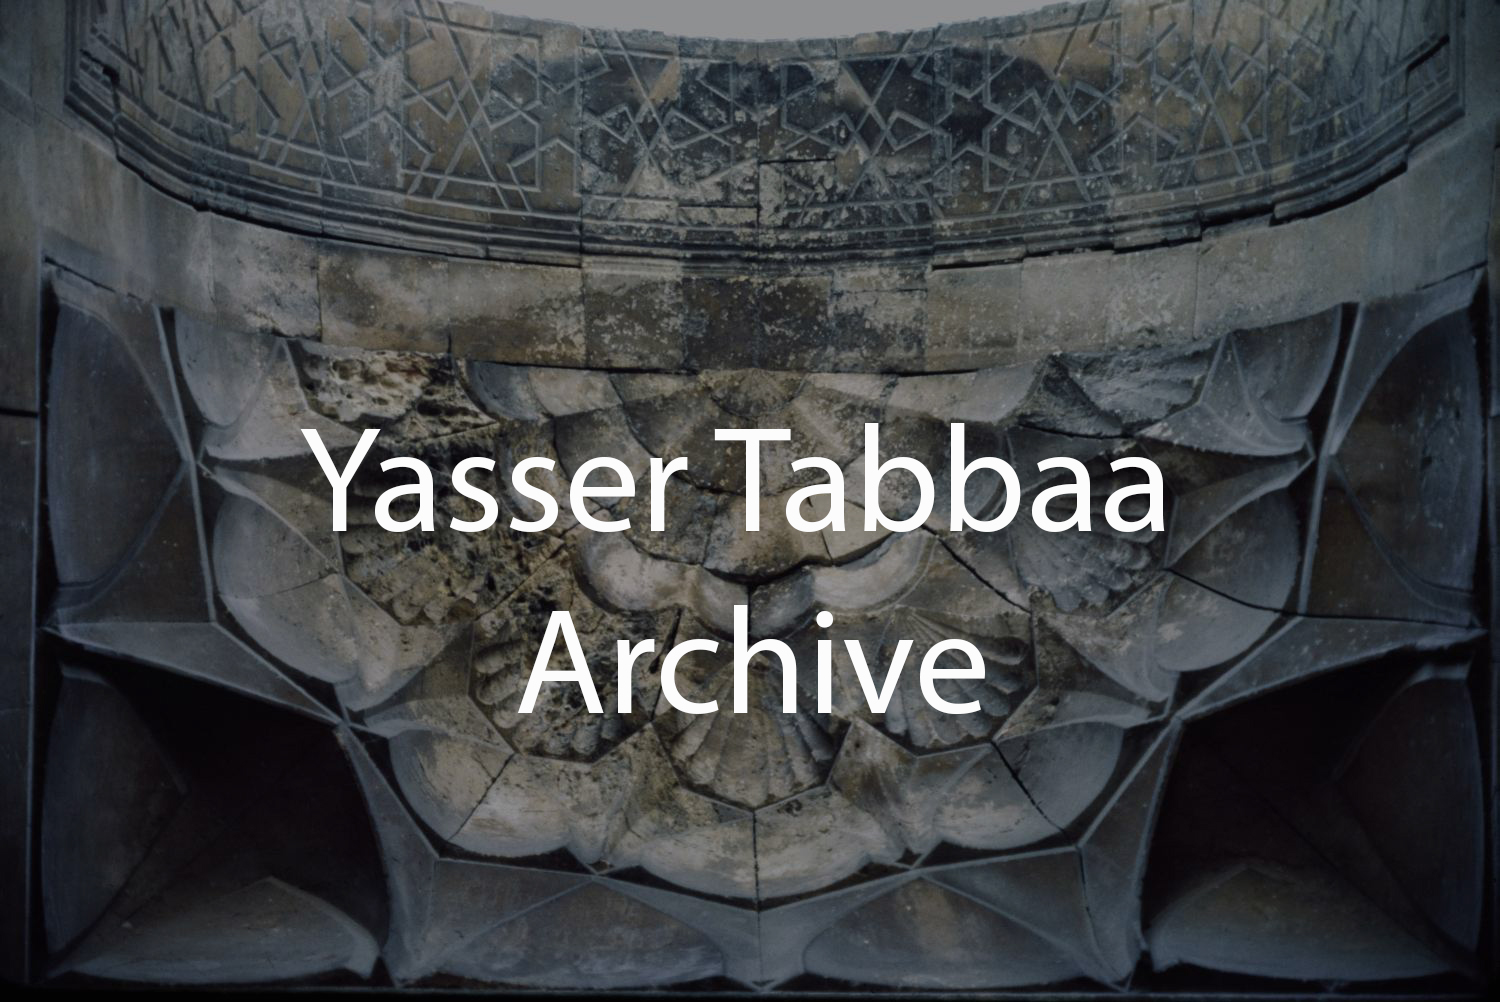 Yasser Tabbaa Archive